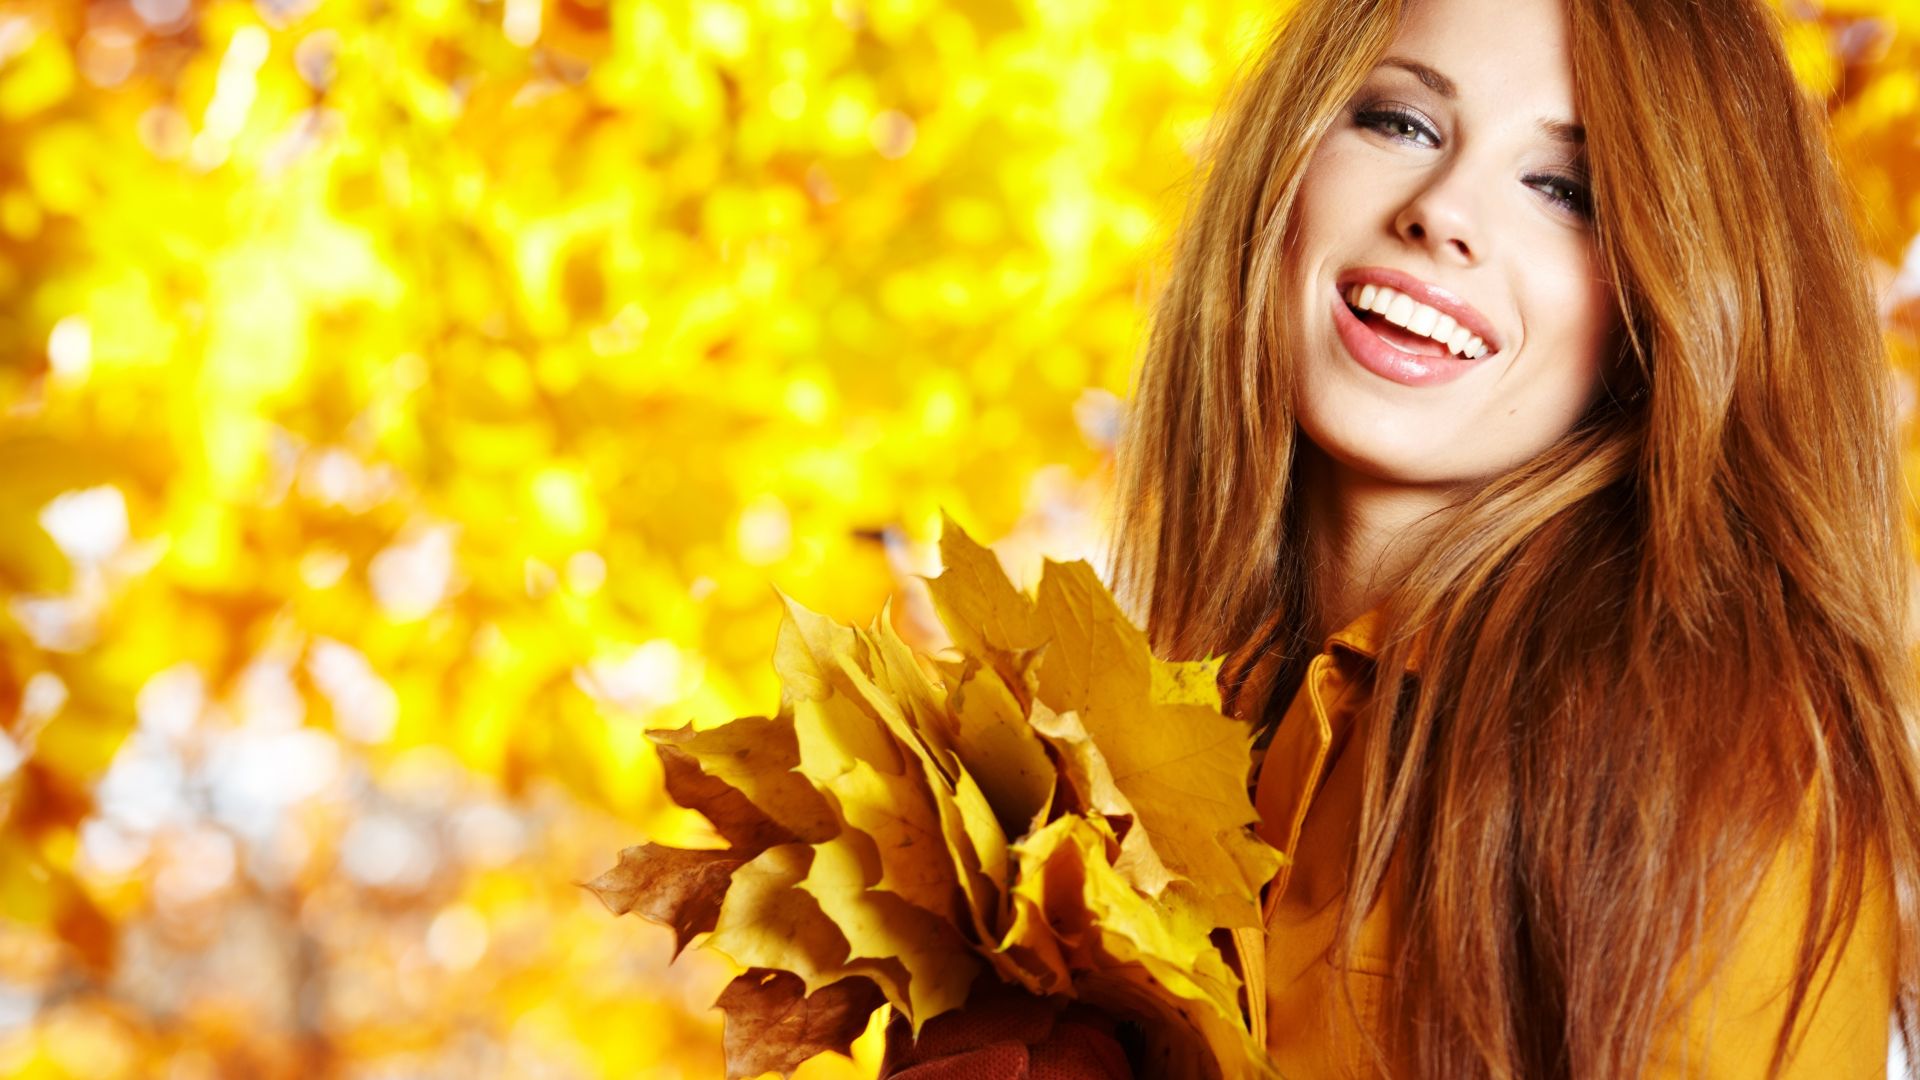 Wallpaper Autumn, girl model, smile, 4k